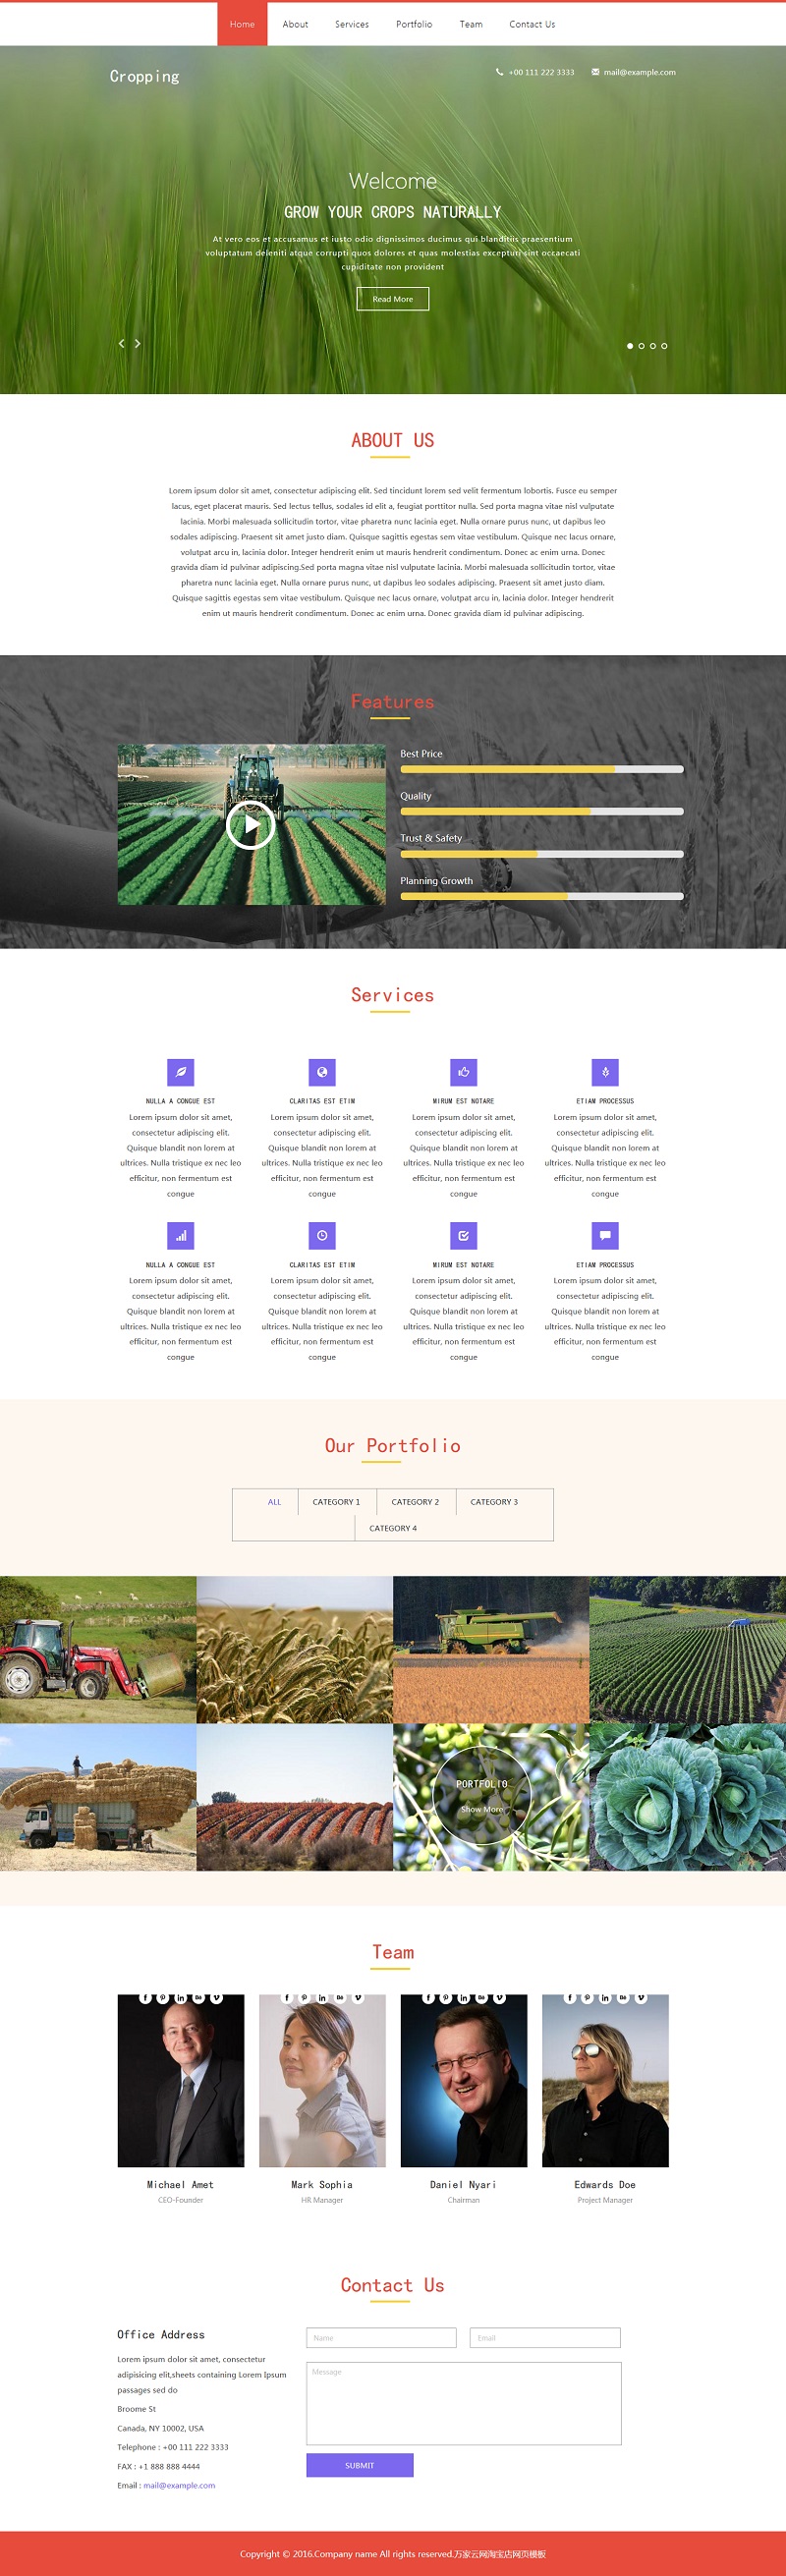 单页响应式HTML5绿色农业网站模板